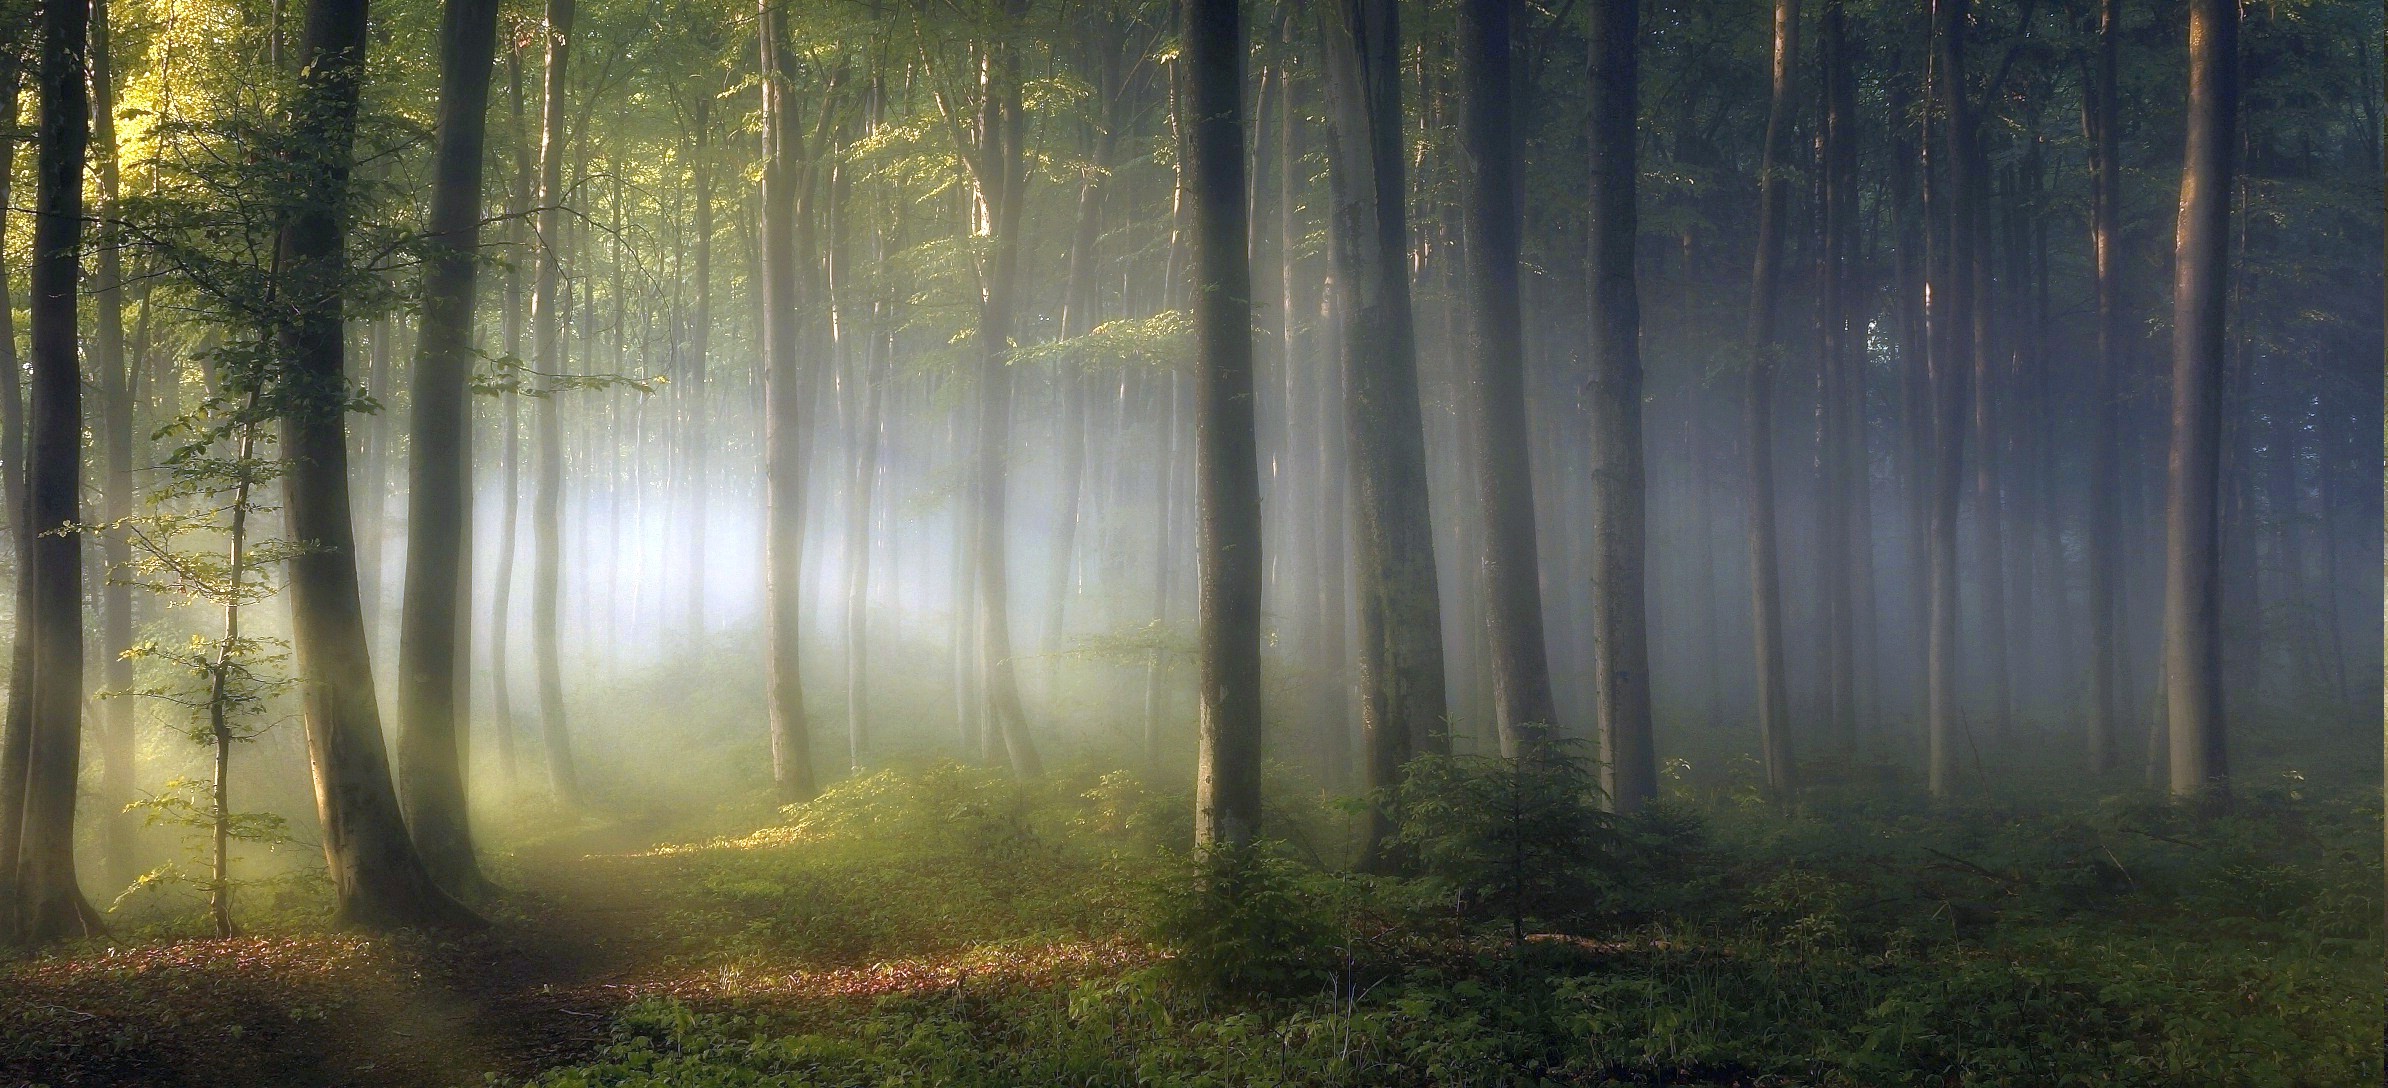 morning, Forest, Shrubs, Sunrise, Trees, Path, Mist, Leaves, Green ...